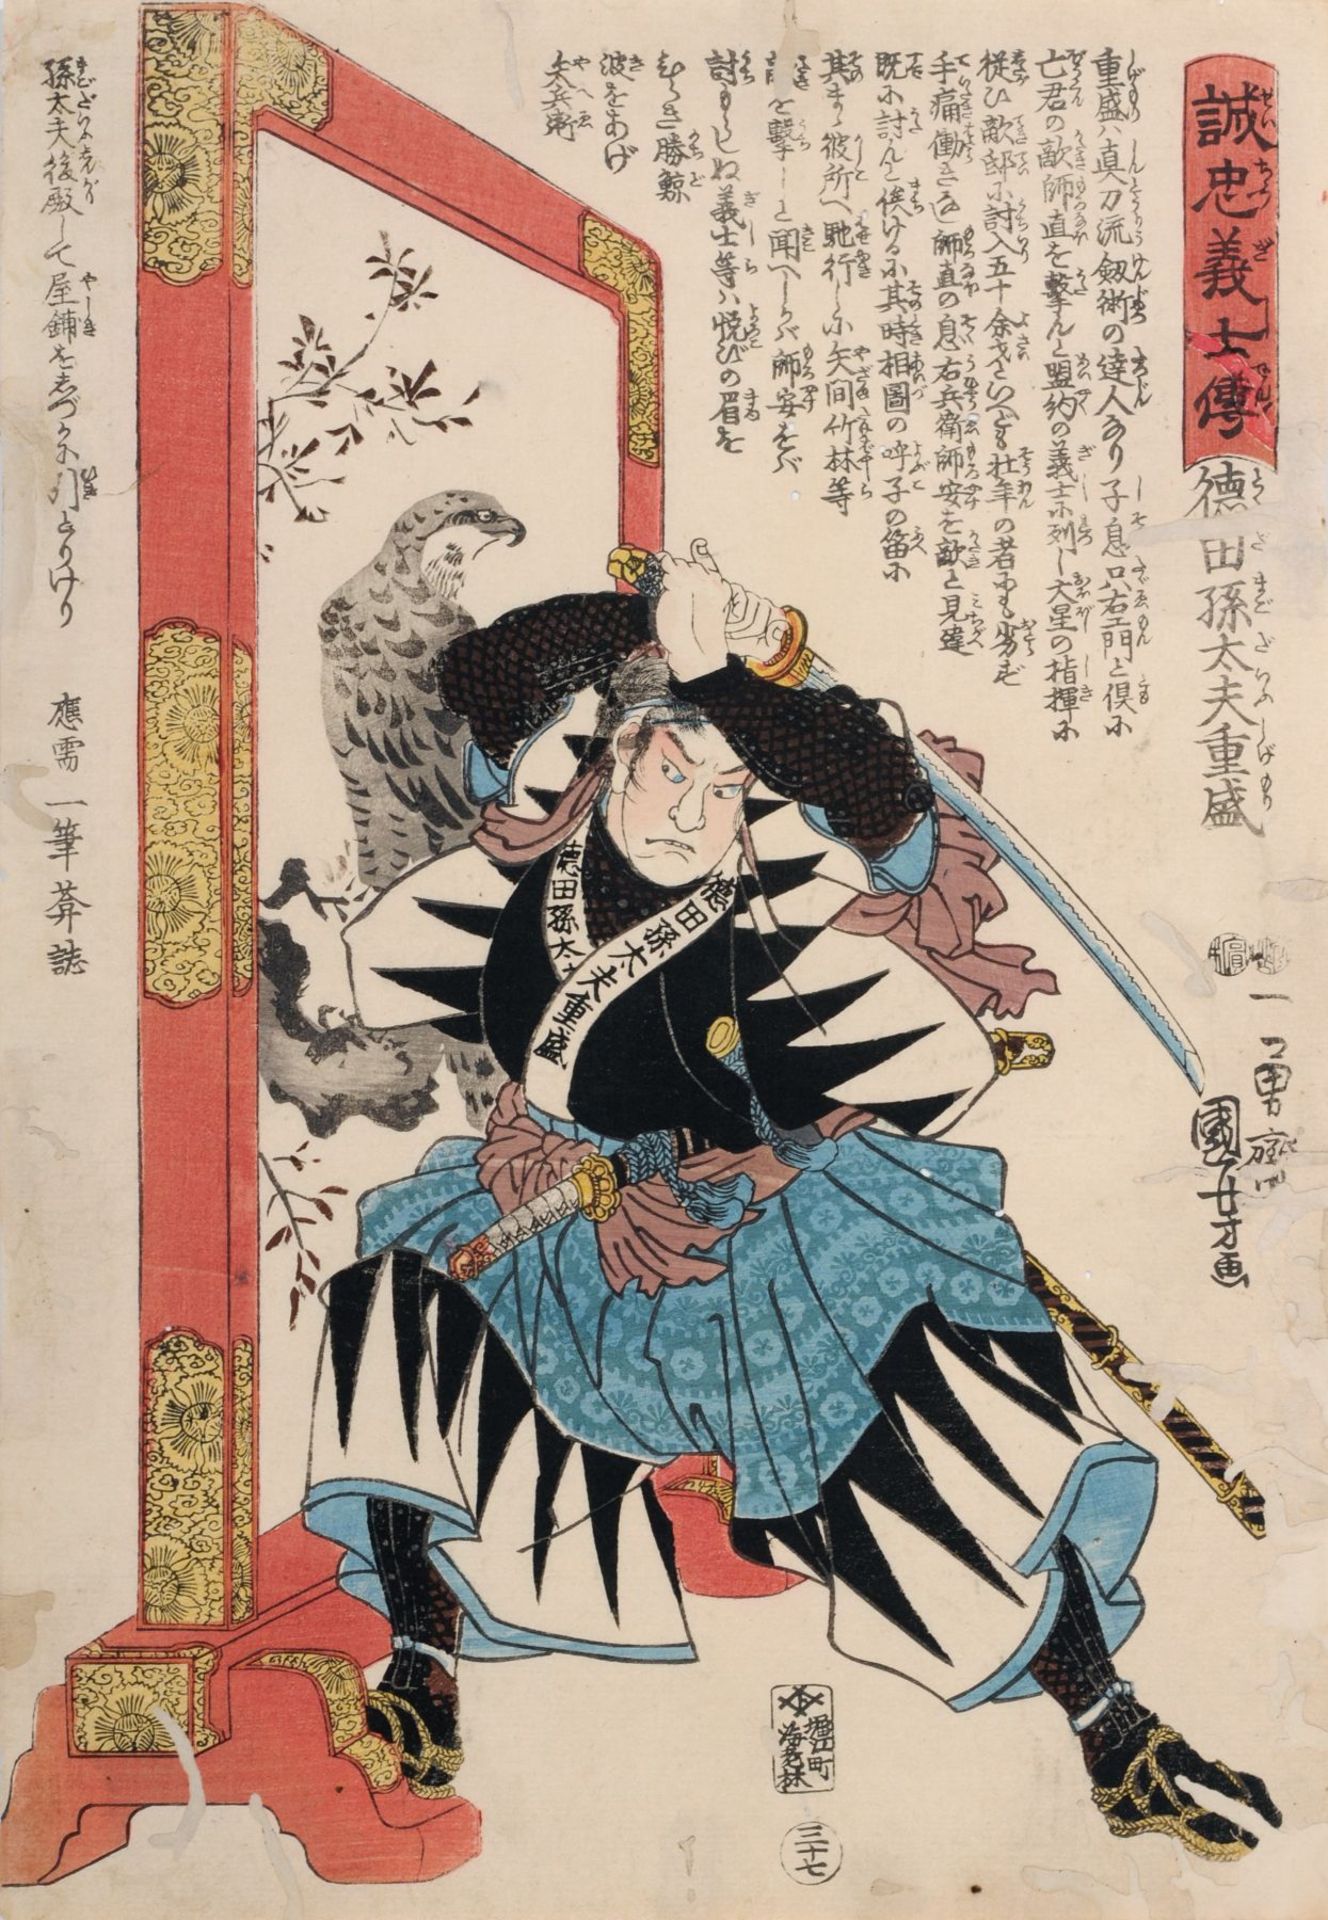 Utagawa Kuniyoshi "Tokuda Magodayû Shigemori". 1847.